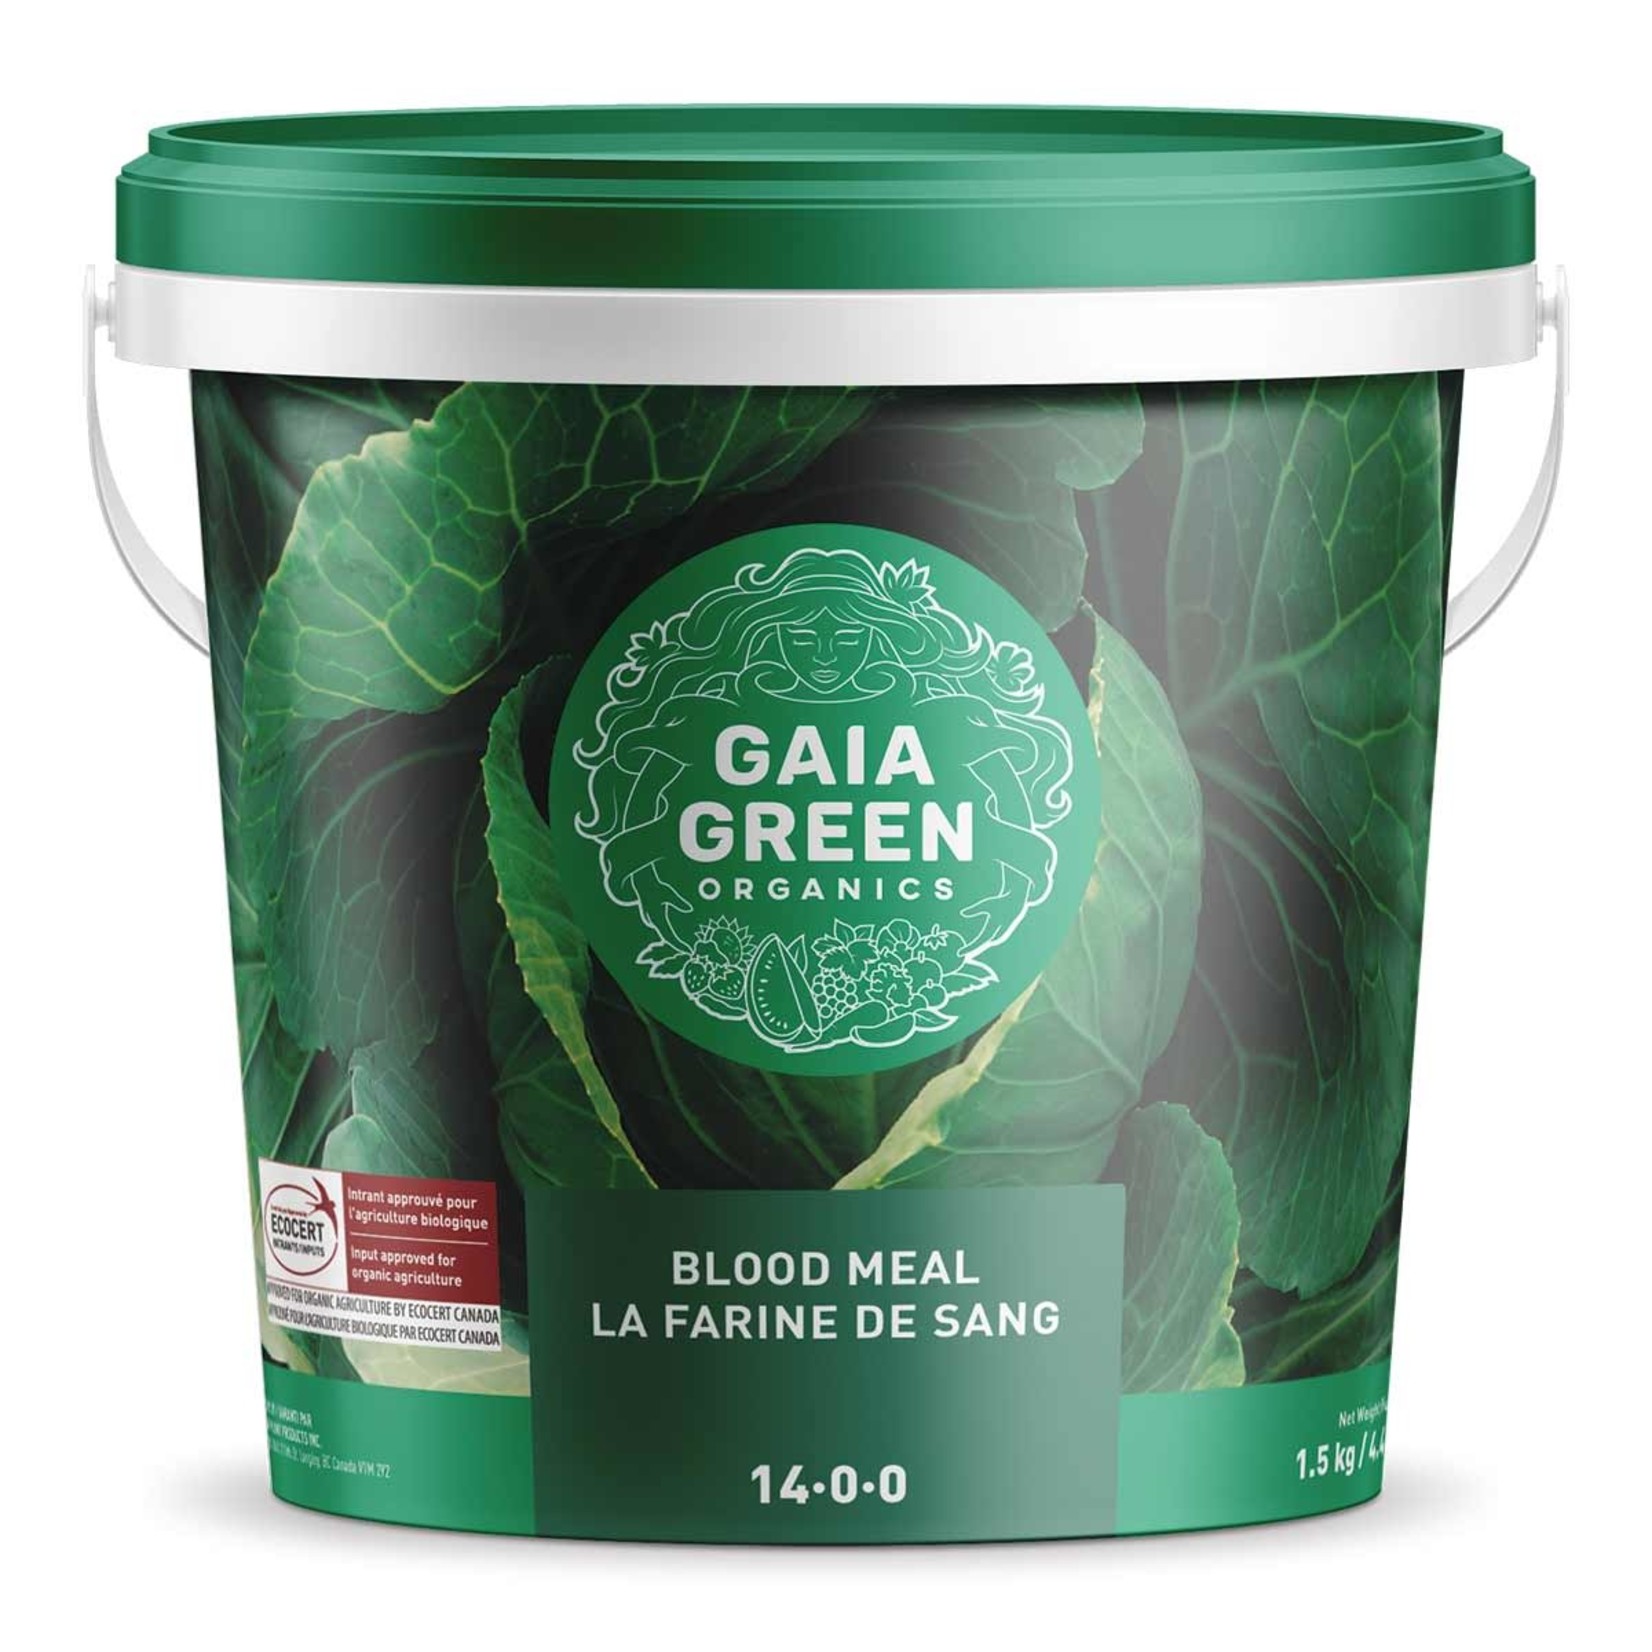 Gaia Green Gaia Green Blood Meal 14-0-0 1.5 kg